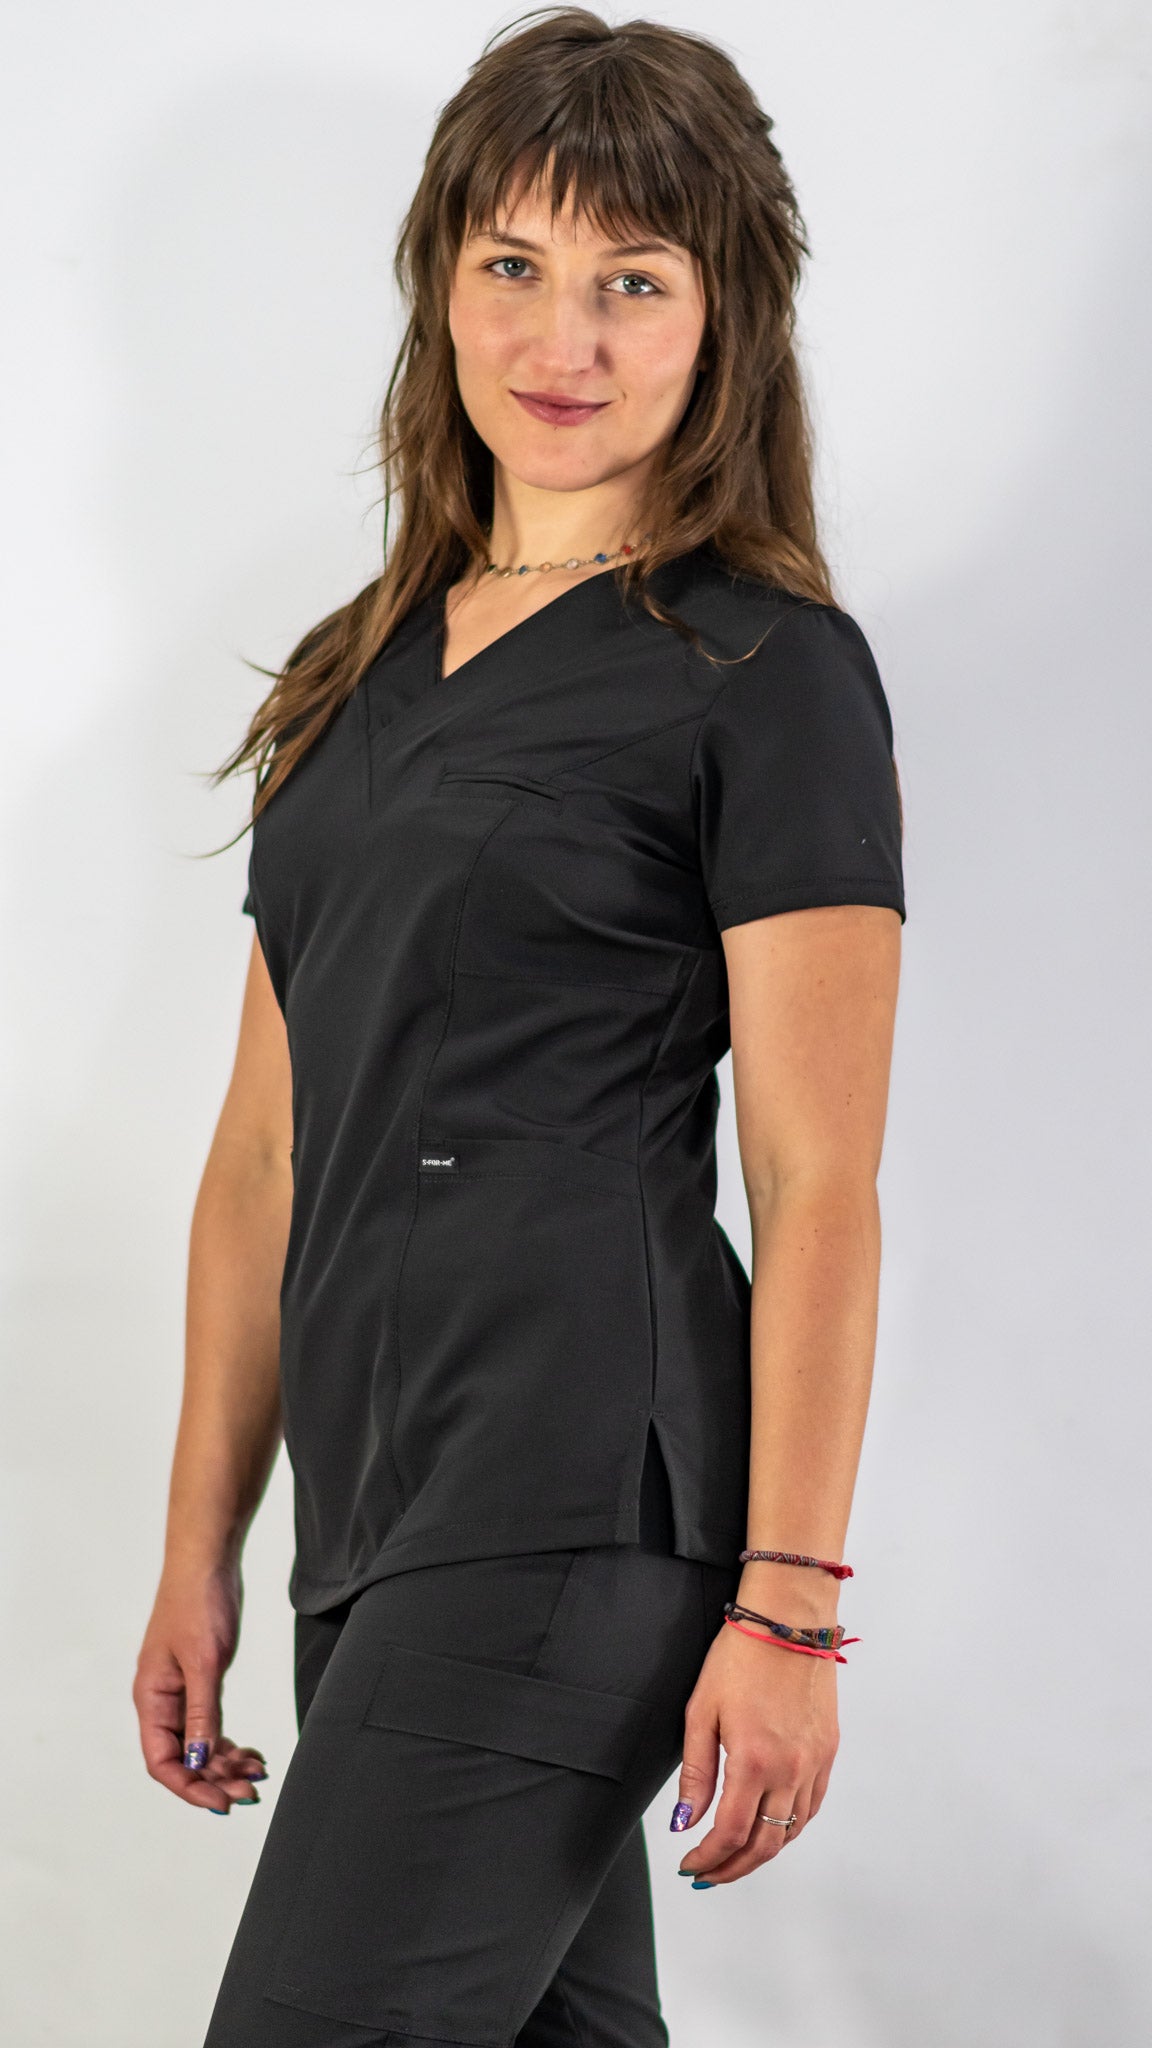 uniforme quirurgico mujer